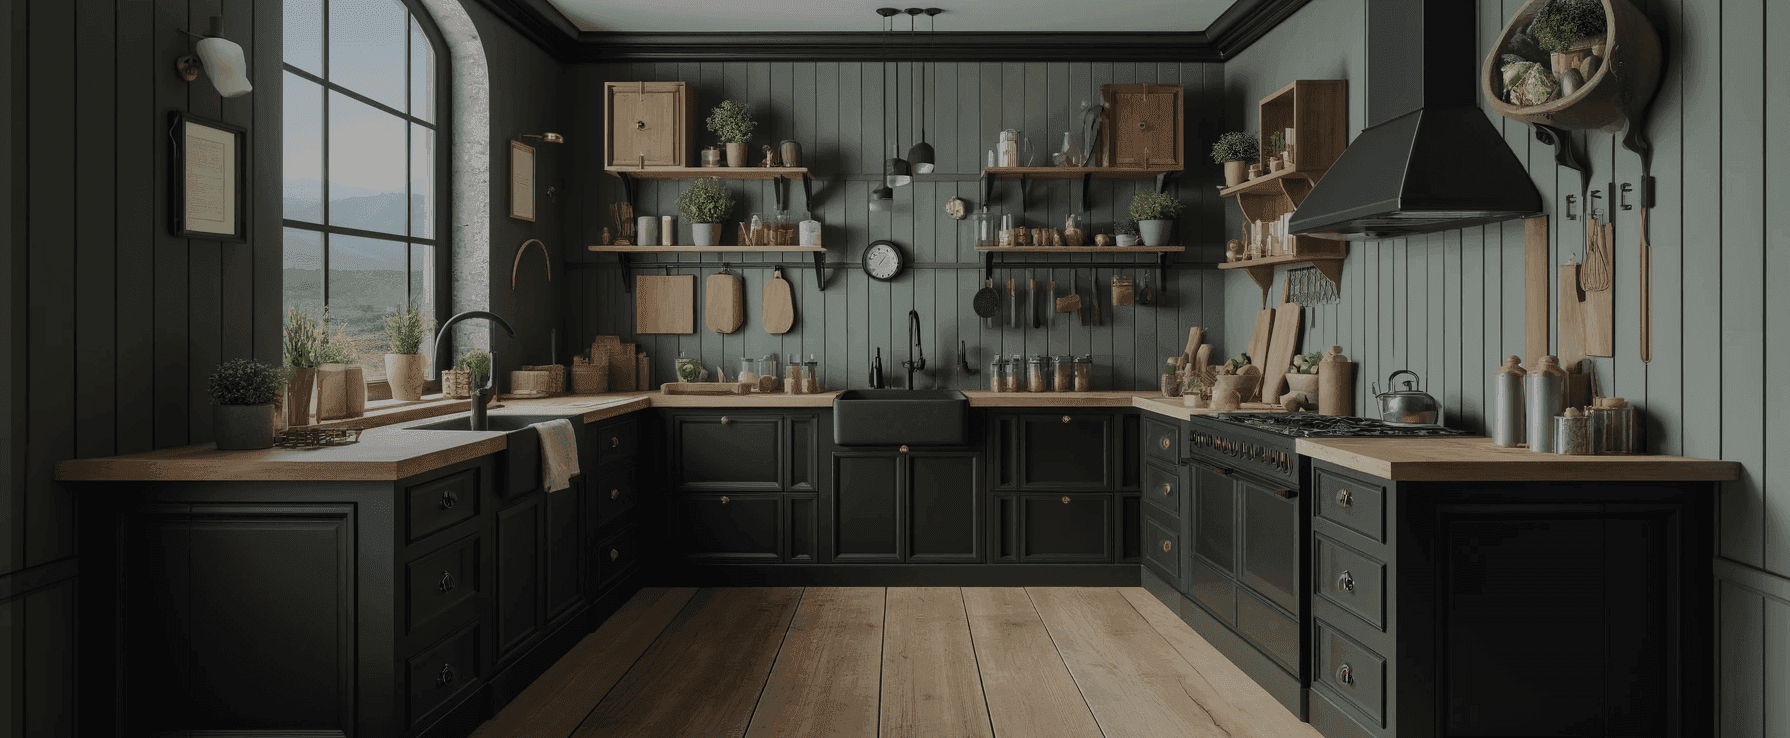 Eine moderne Küche mit schwarzer Farbgebung und minimalen Hängeschränken, die im rustikalen Bauernhausstil gestaltet ist. 